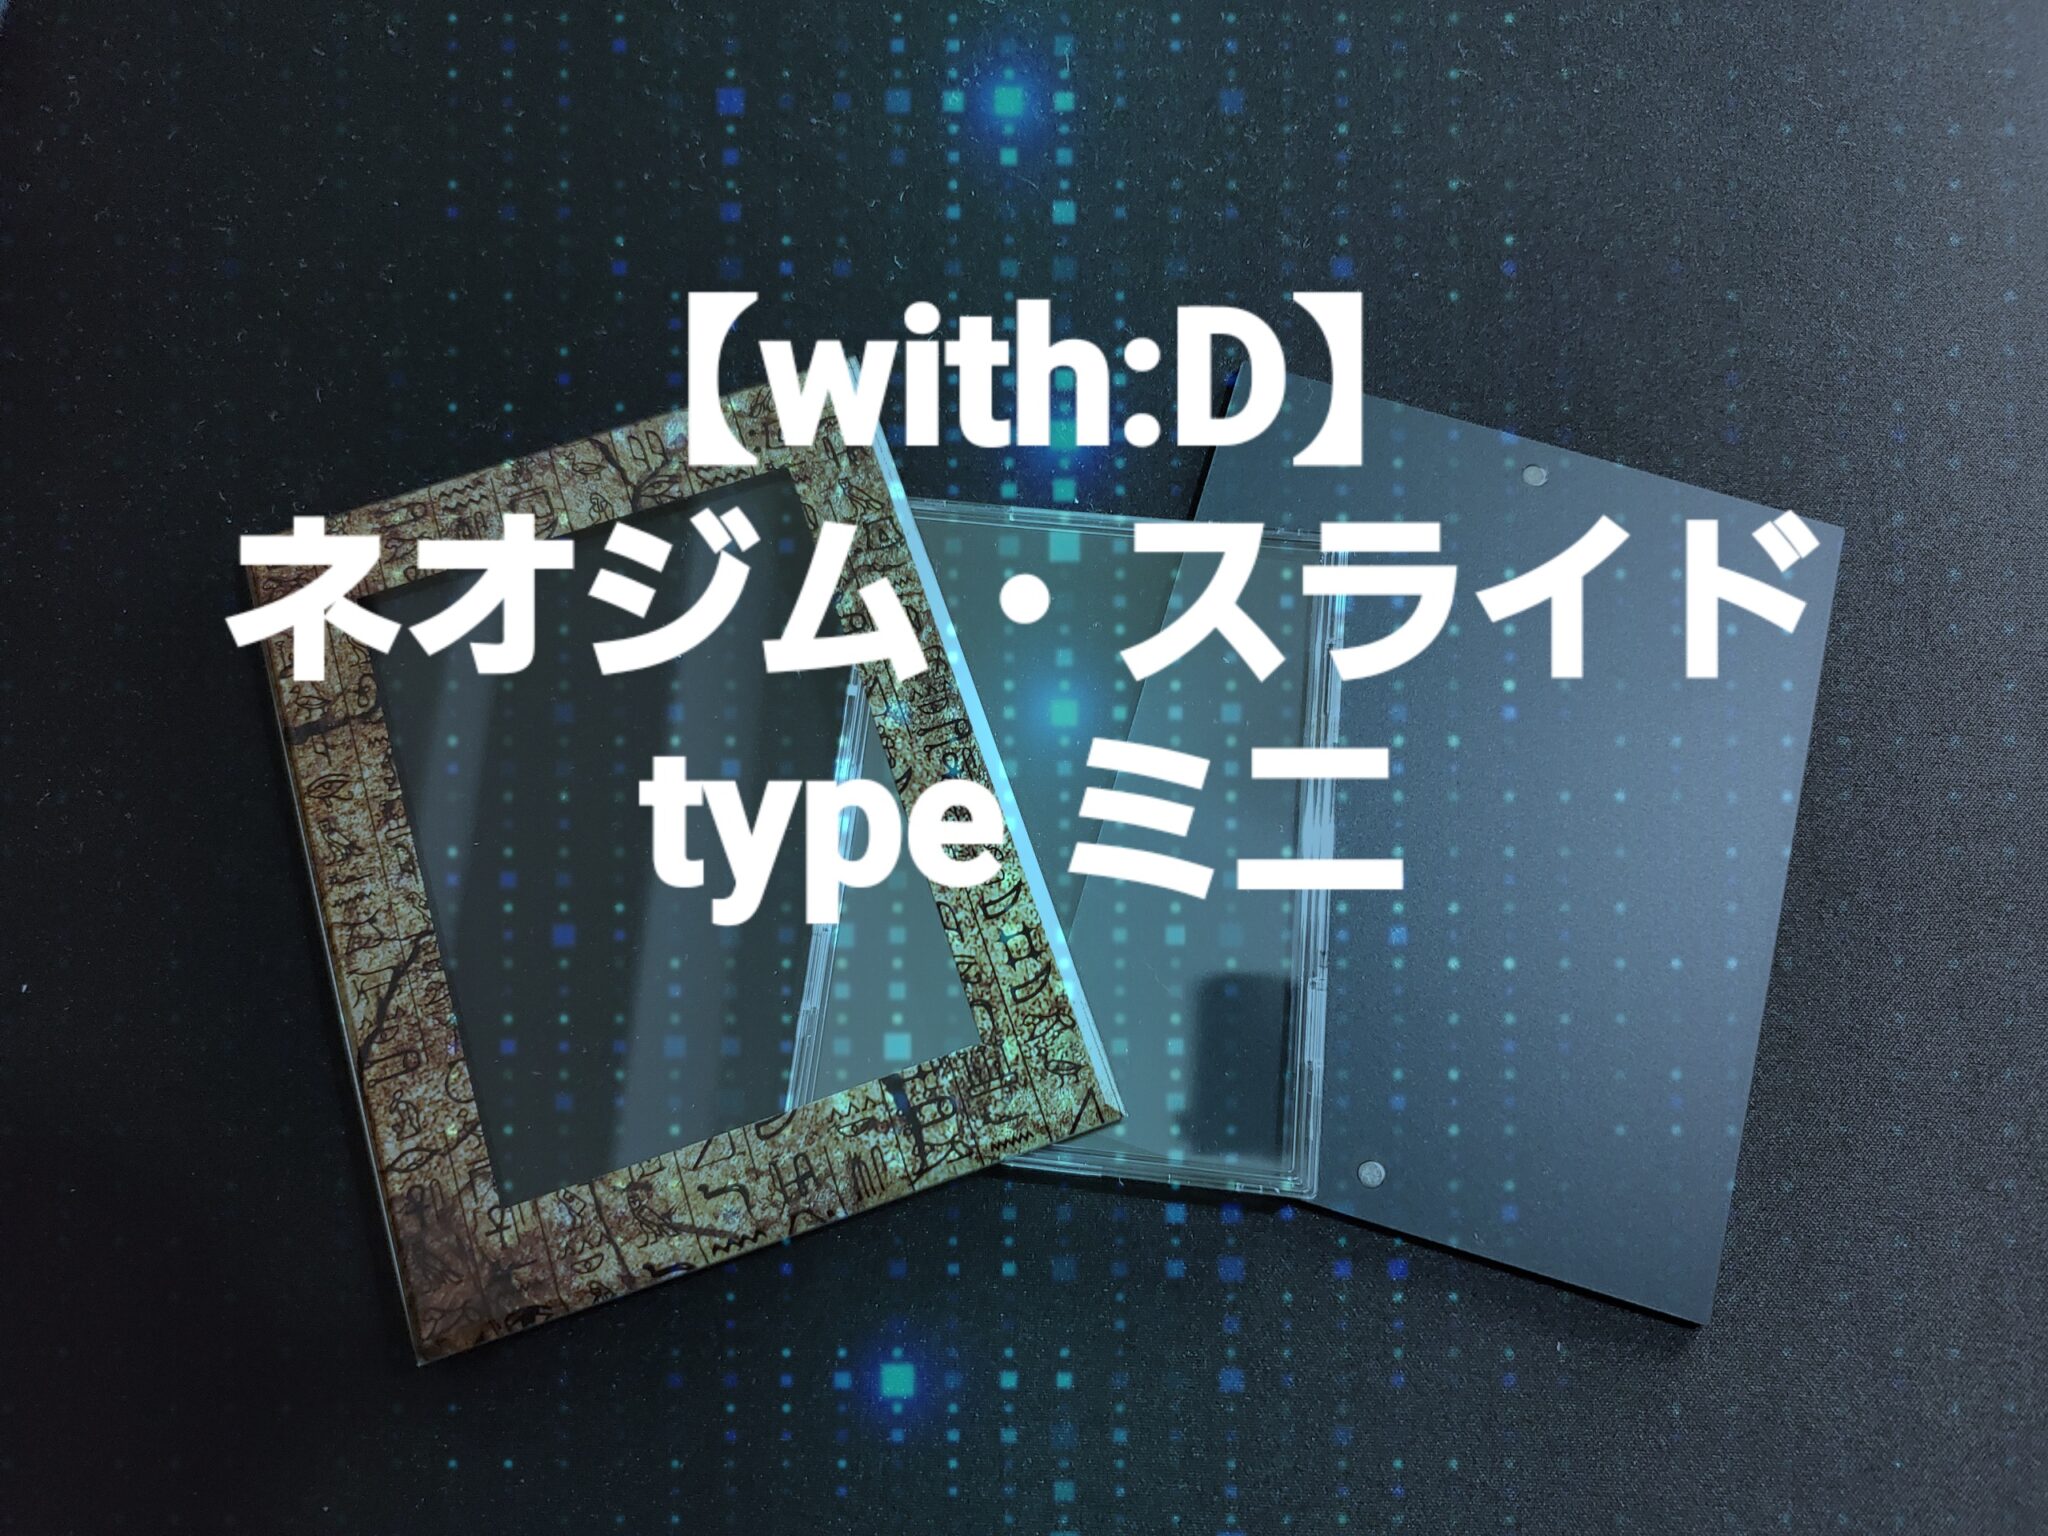 with:D】ネオジム・スライド-type ミニ カードのコレクション保管方法